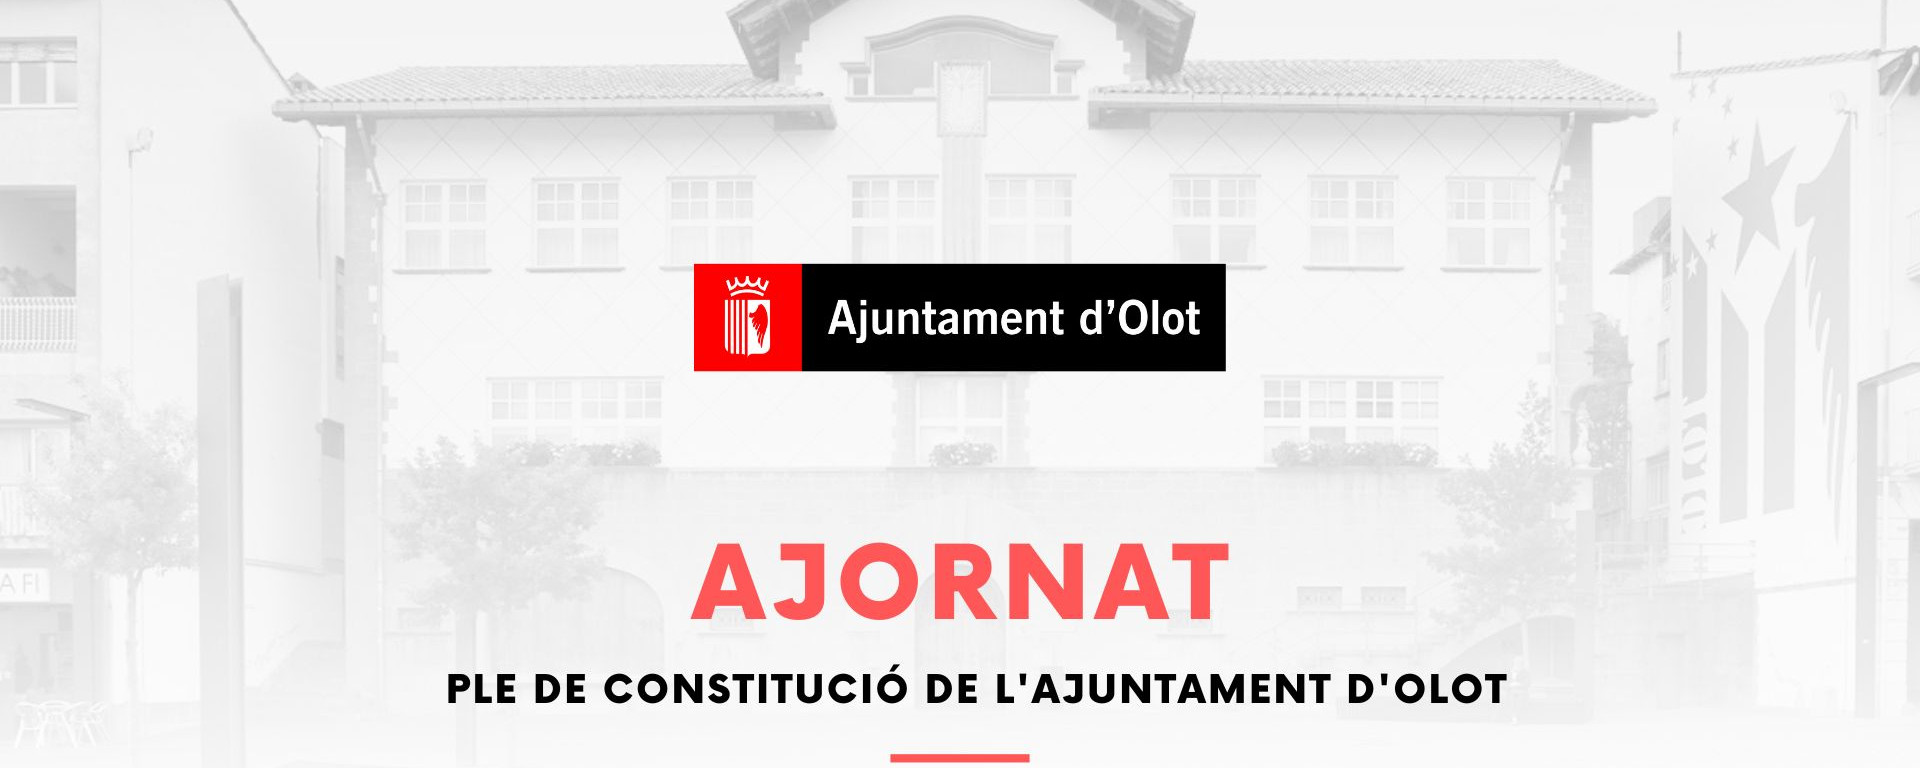 Ajornat_Constitució_Ajuntament Olot